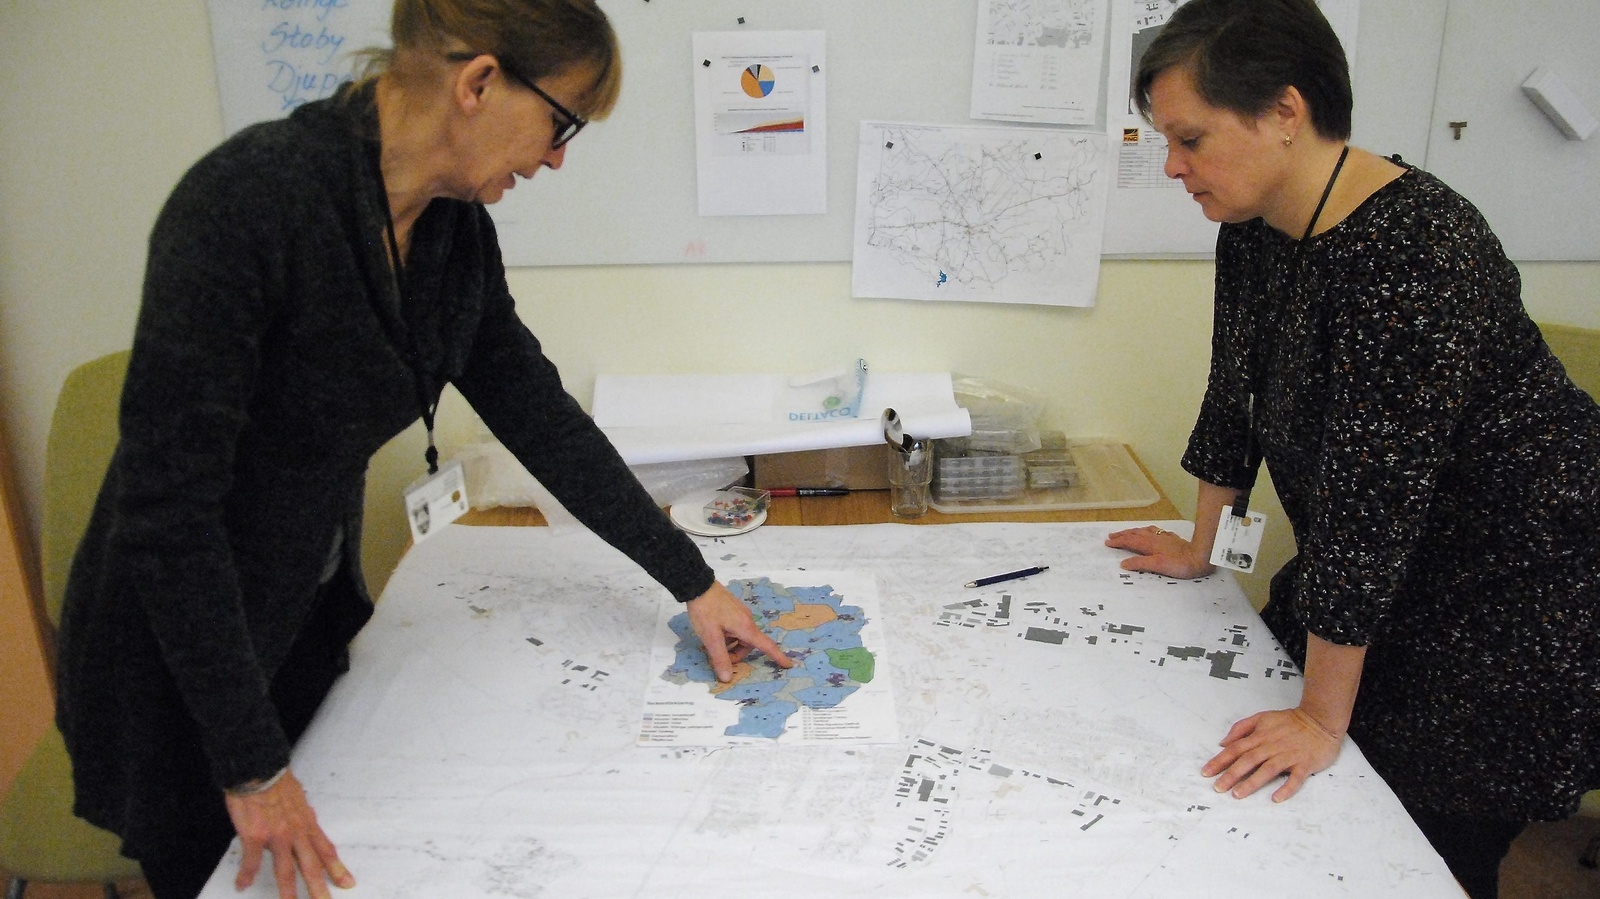 Koll på läget. Lena Westerlundh (till vänster) och Pernilla Rydmark håller koll på läget när det gäller intresseanmälningar, avtal och färdiga inkopplingar via kartor och diagram. FOTO: CARL-JOHAN BAULER